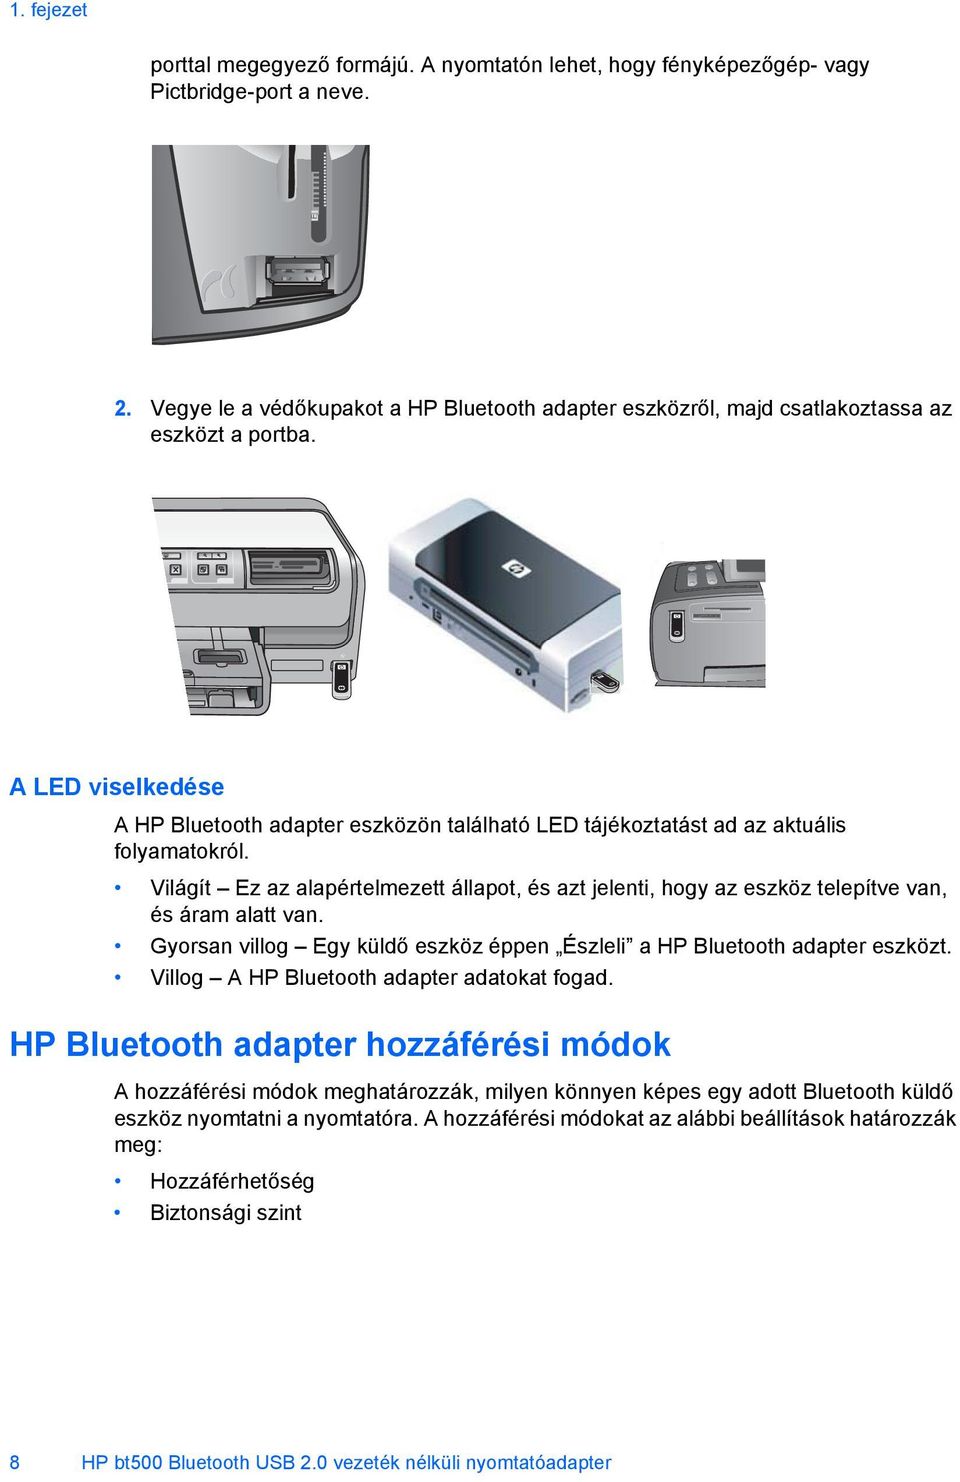 A LED viselkedése A HP Bluetooth adapter eszközön található LED tájékoztatást ad az aktuális folyamatokról.